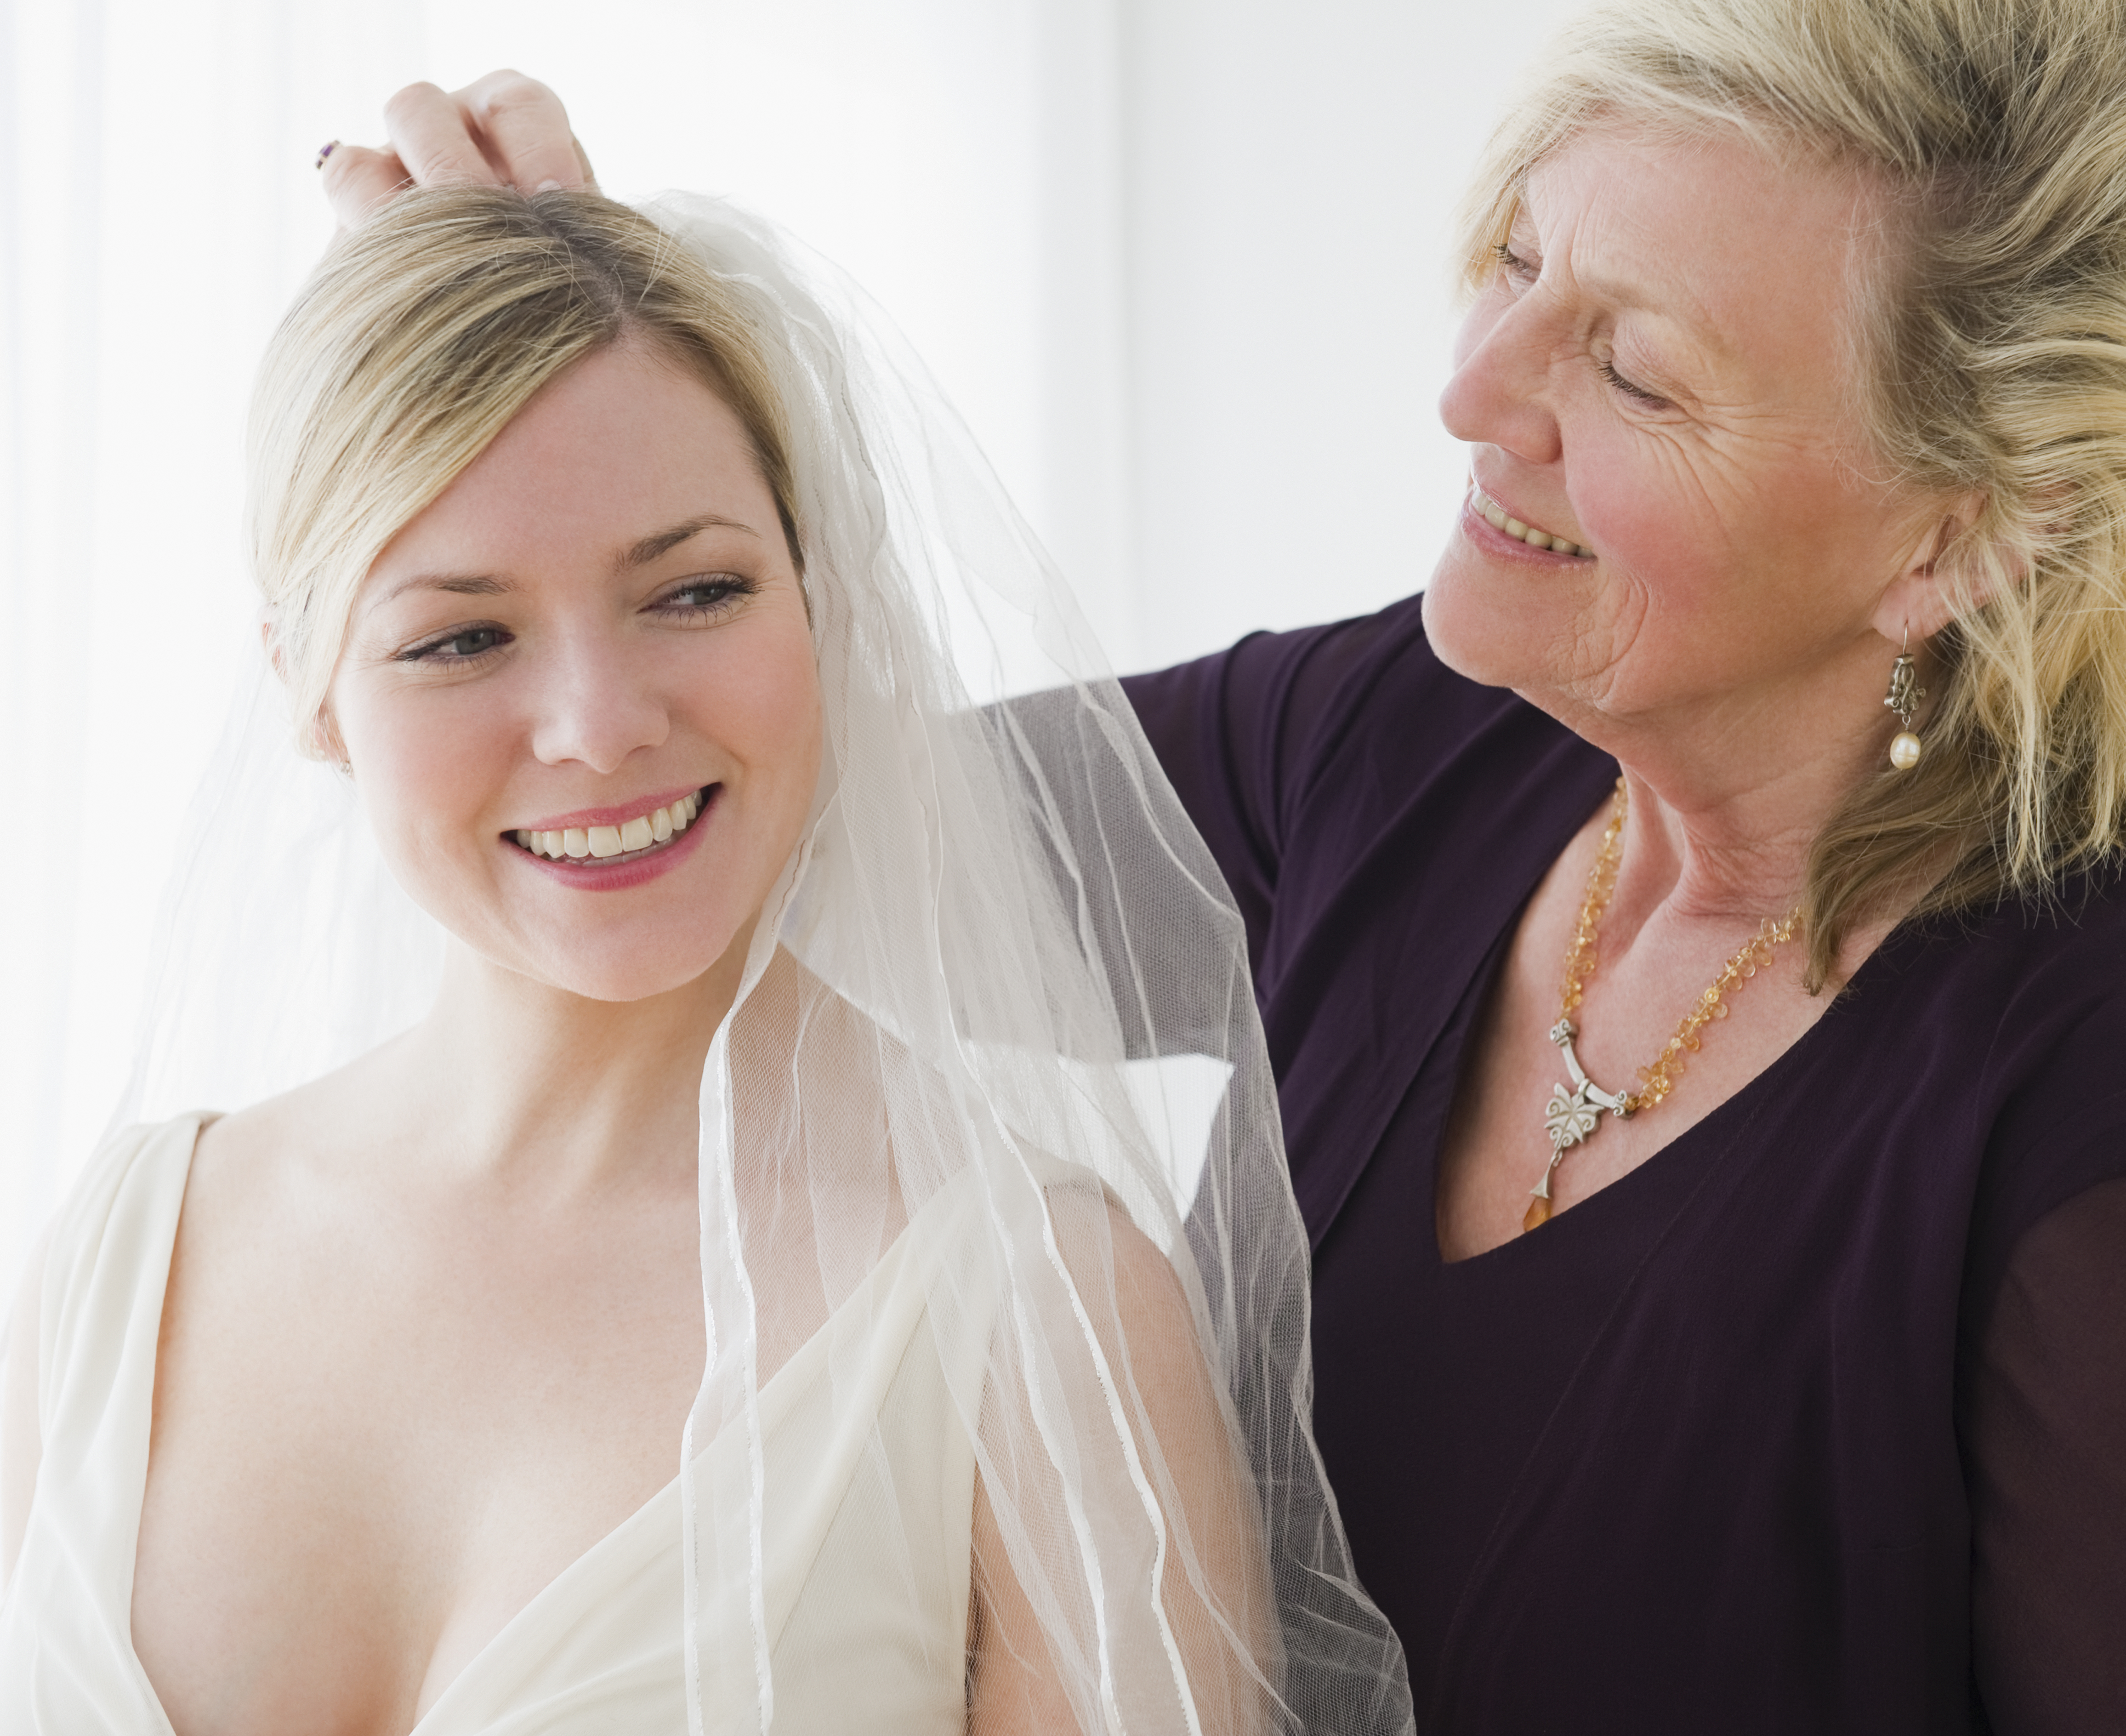 Une femme plus âgée aide une femme plus jeune à essayer une robe de mariée | Source : Getty Images